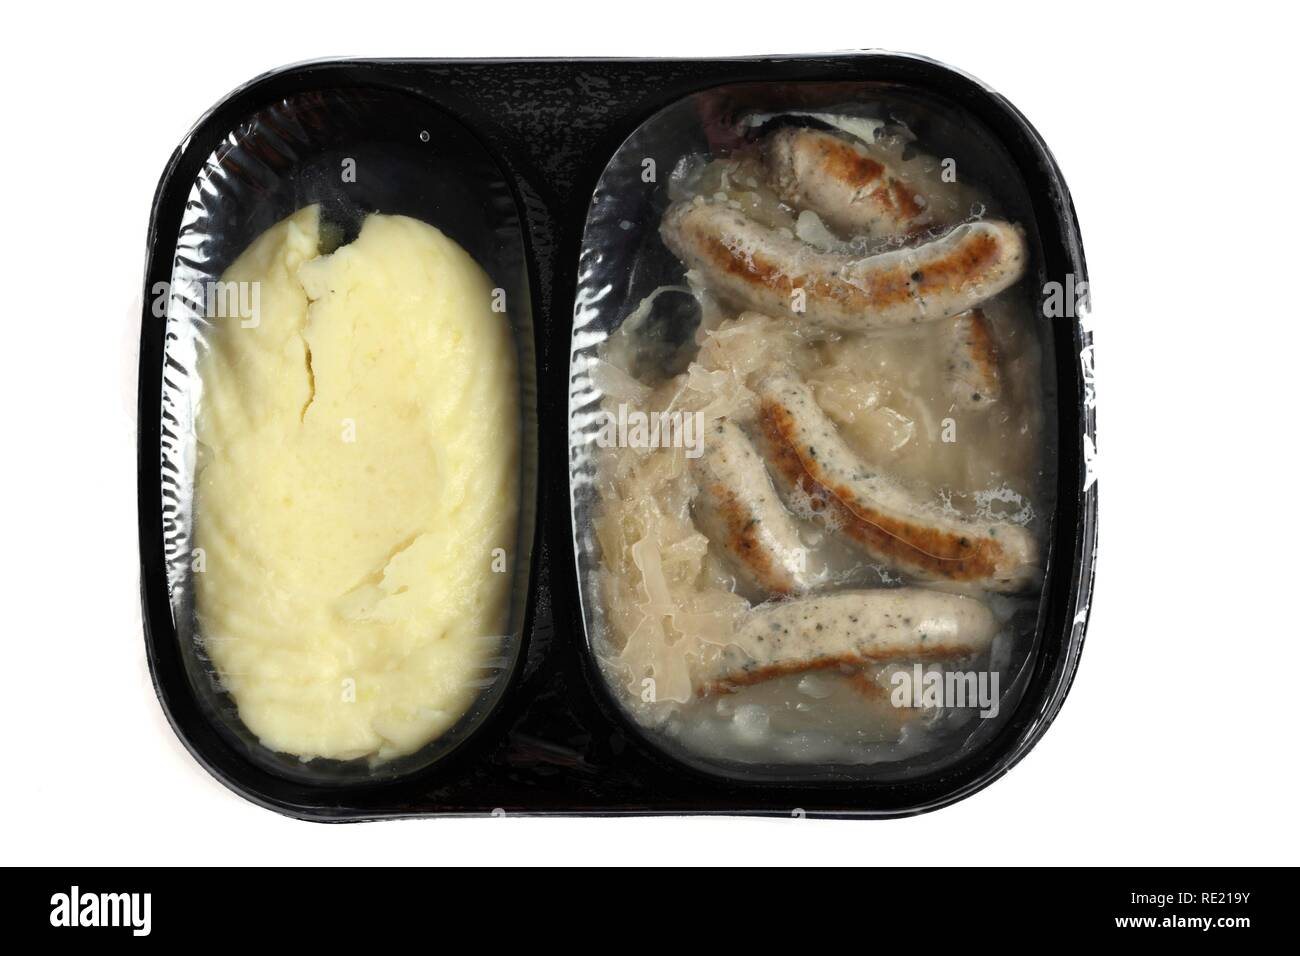 Repas dans un récipient en plastique, pré-cuites, en portions individuelles pour une personne, des saucisses de Nuremberg avec la choucroute et de la purée de pomme de terre Banque D'Images